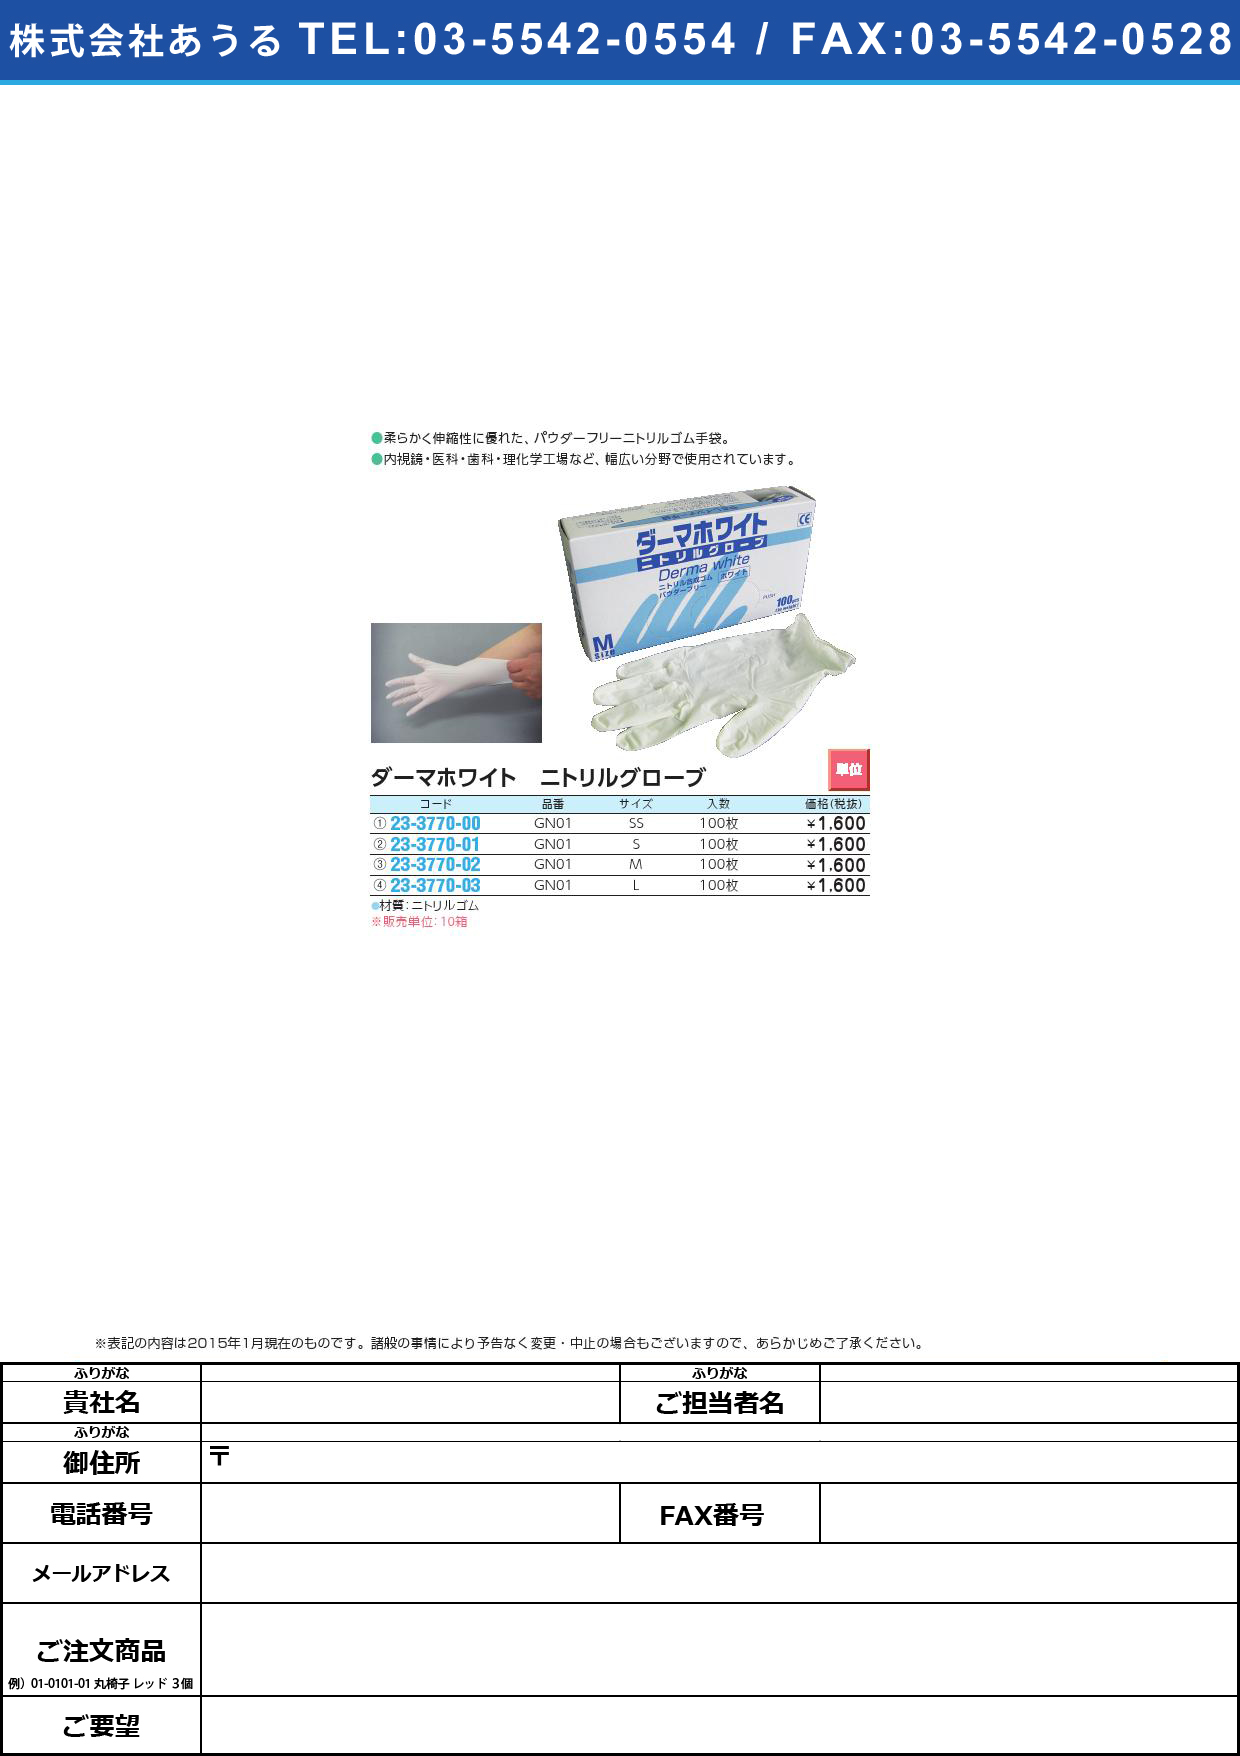 ダーマホワイト ニトリル手袋ＰＦ ﾀﾞｰﾏﾎﾜｲﾄﾆﾄﾘﾙﾃﾌﾞｸﾛPF GN01(S)100ﾏｲ【10箱単位】(23-3770-01)